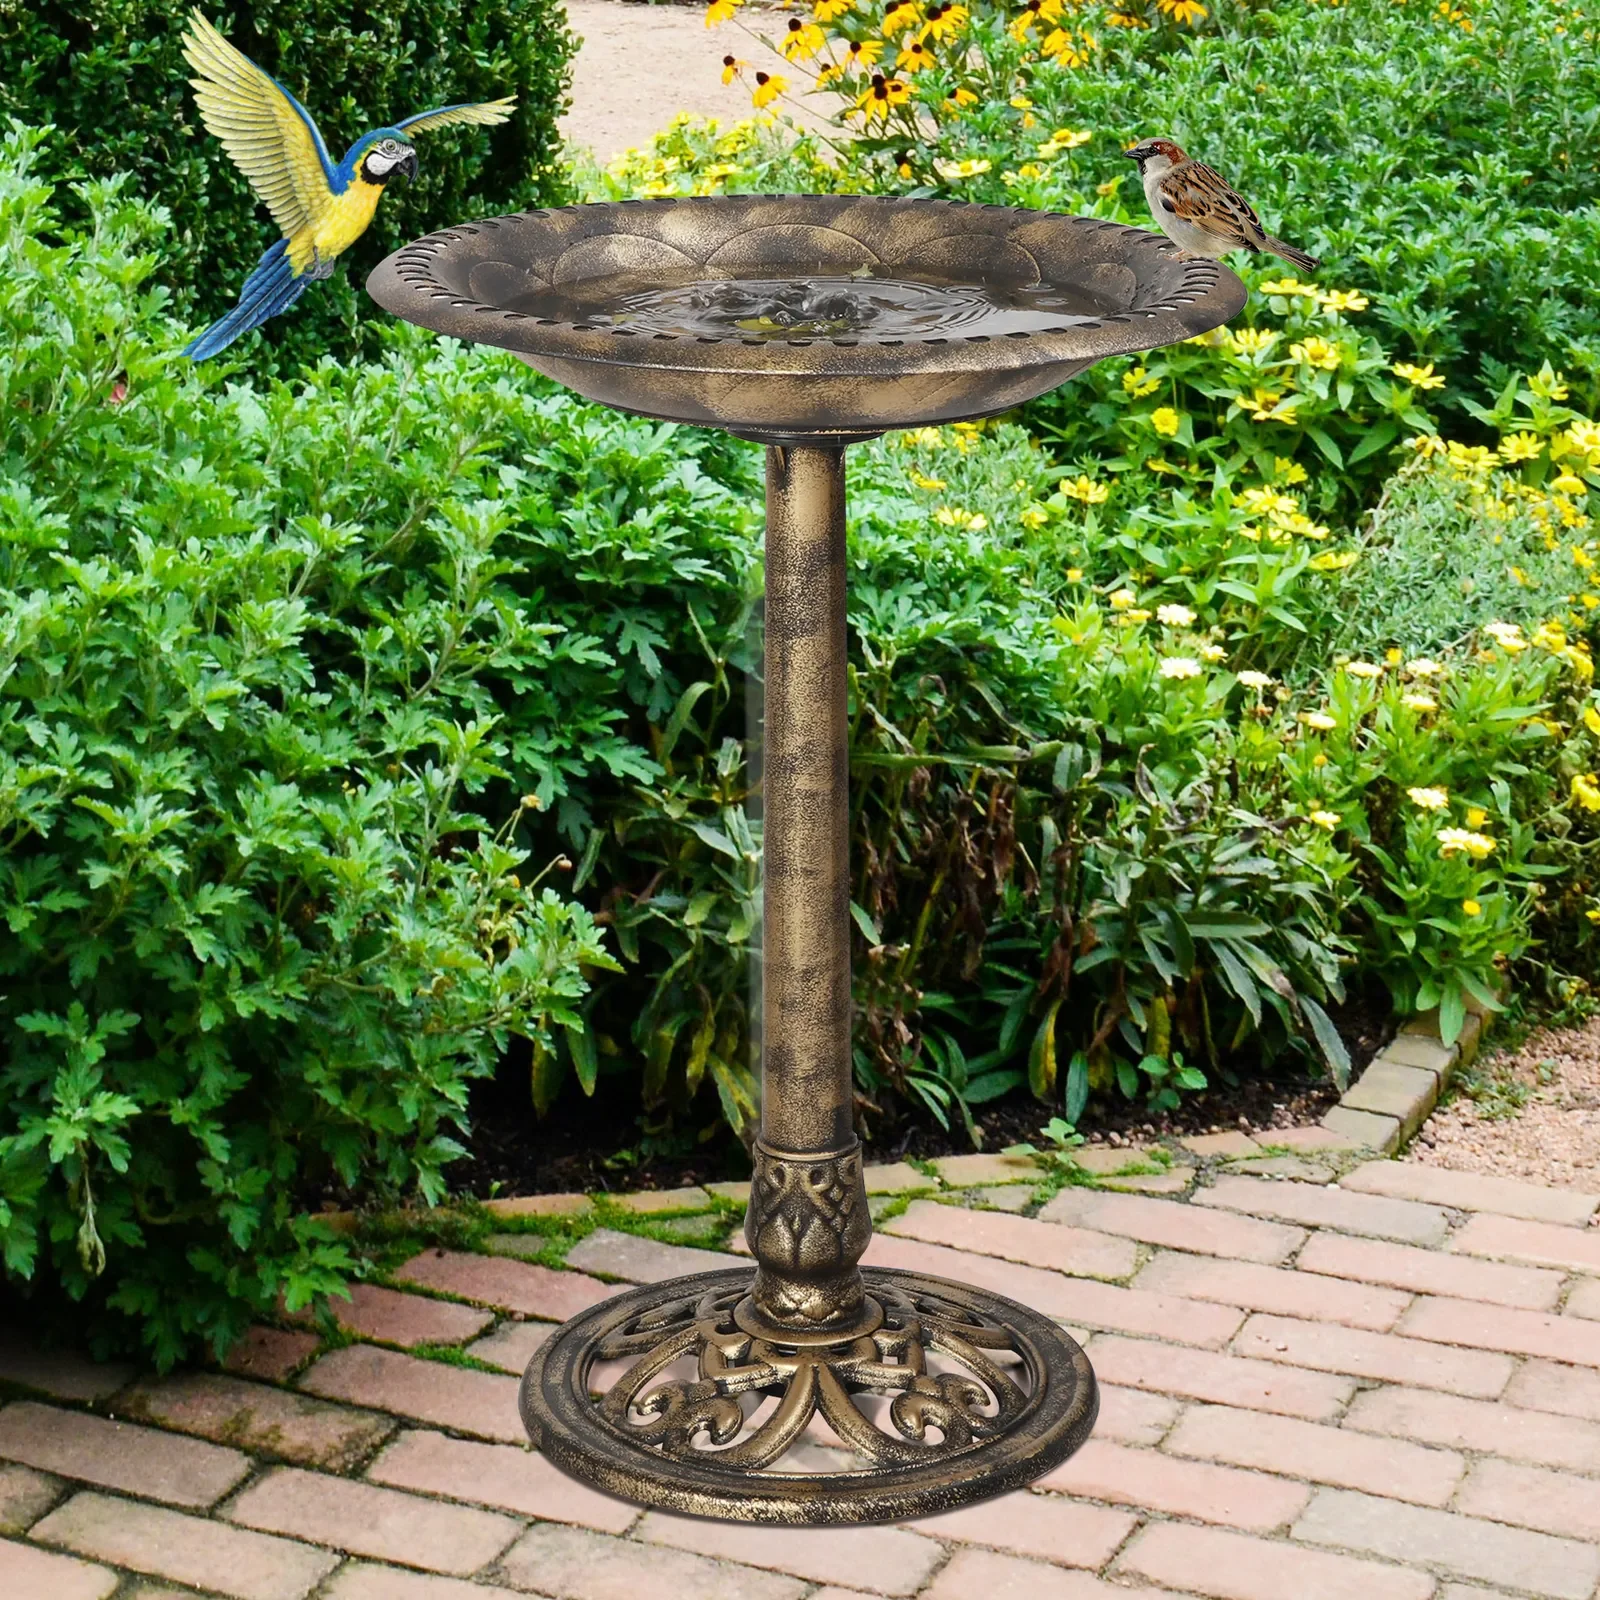 

28" Pedestal Bird Bath Feeder Outdoor Garden Yard Decor Freestanding Bronze